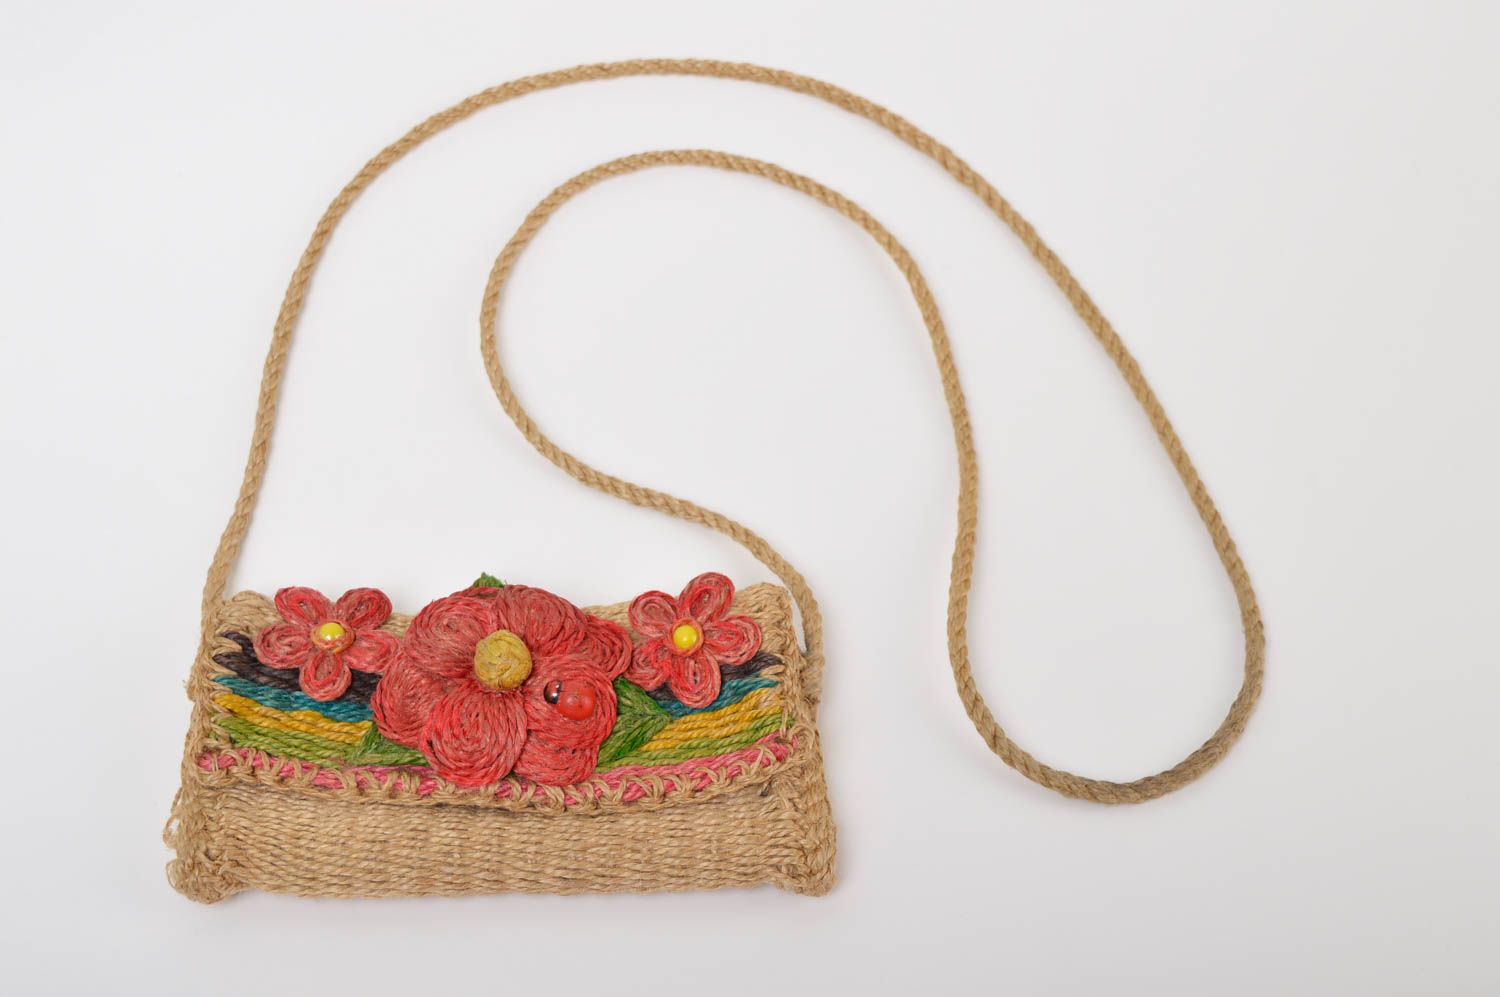 Сумка ручной работы сумочка плетеная из шпагата женская сумка с цветами фото 2